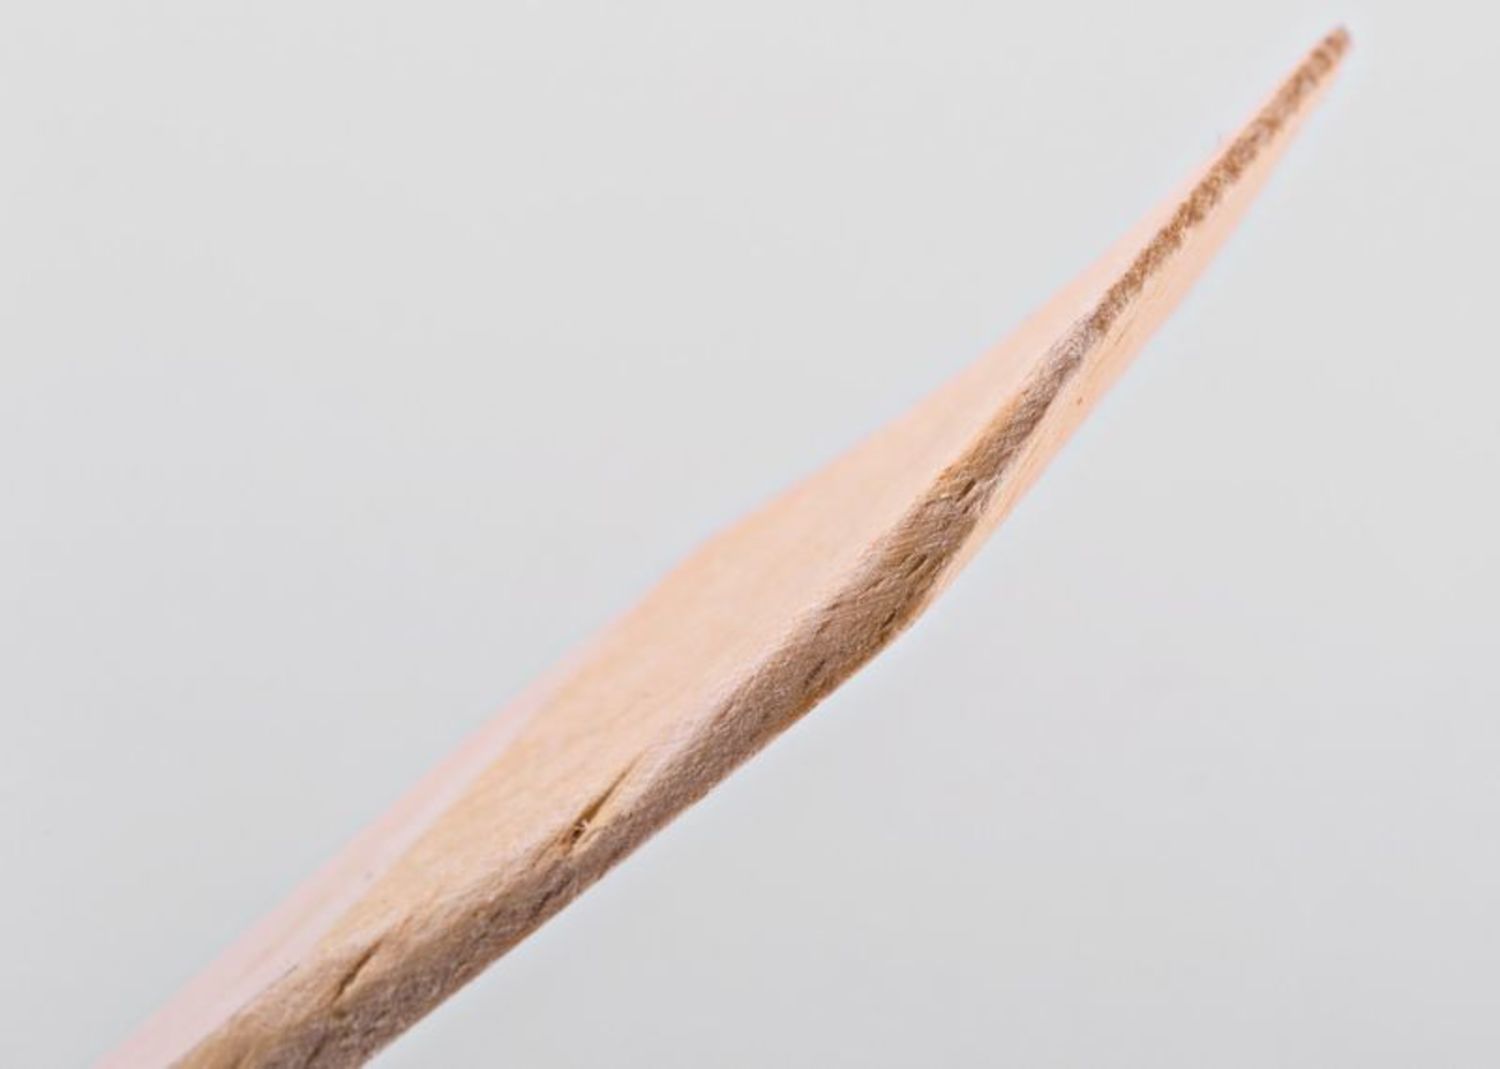 Wooden kitchen spatula photo 5